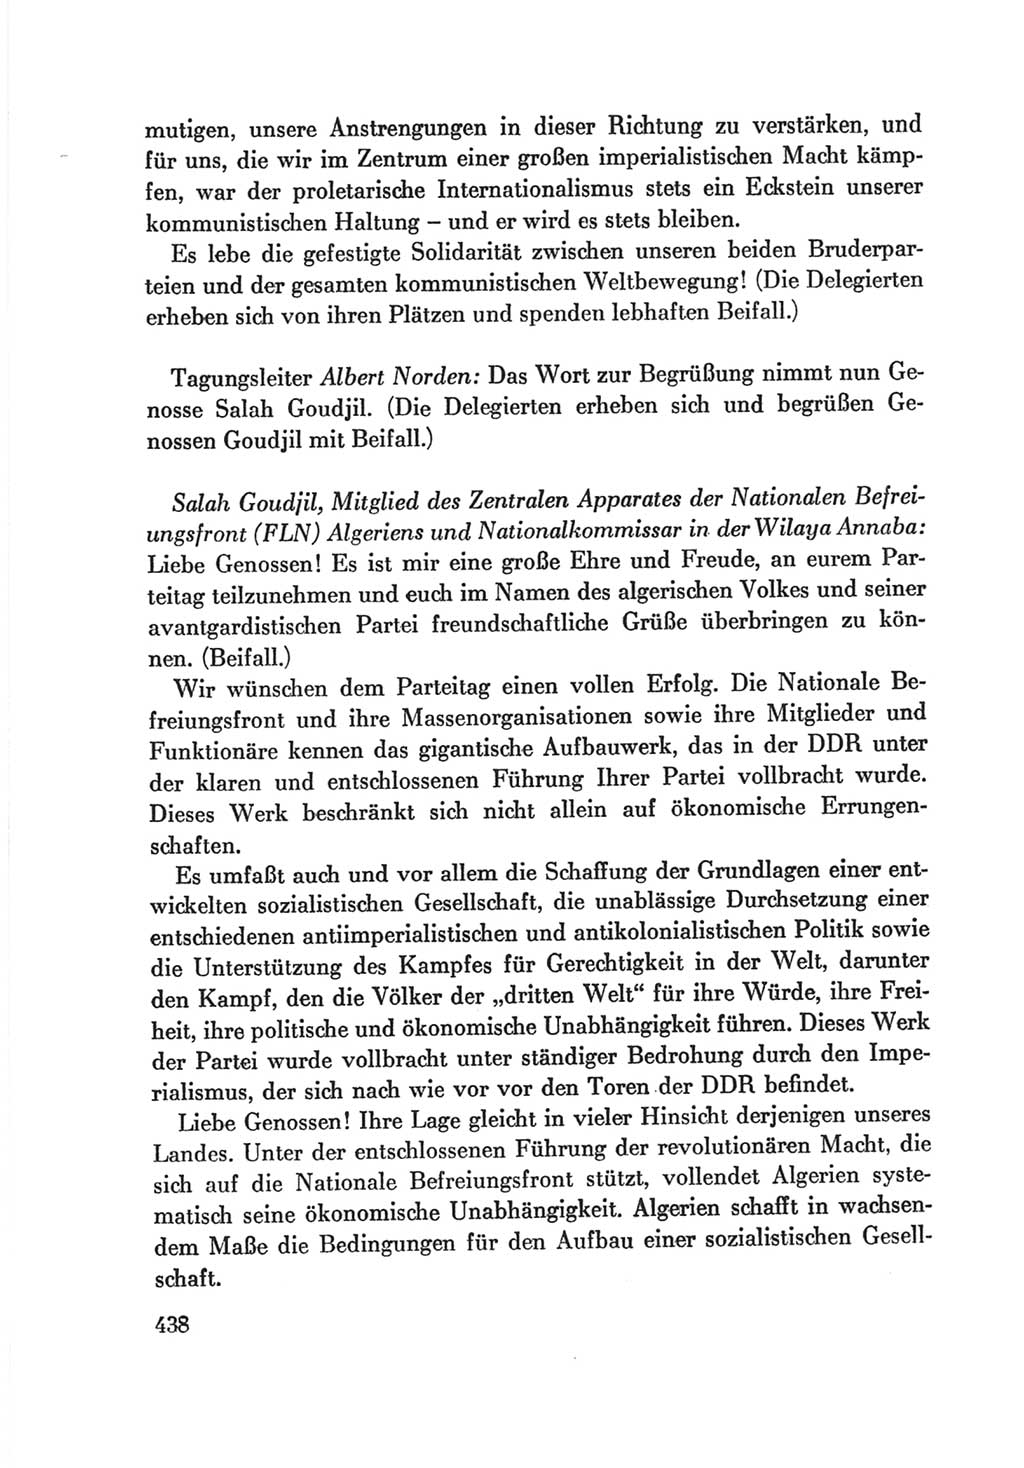 Protokoll der Verhandlungen des Ⅷ. Parteitages der Sozialistischen Einheitspartei Deutschlands (SED) [Deutsche Demokratische Republik (DDR)] 1971, Band 1, Seite 438 (Prot. Verh. Ⅷ. PT SED DDR 1971, Bd. 1, S. 438)